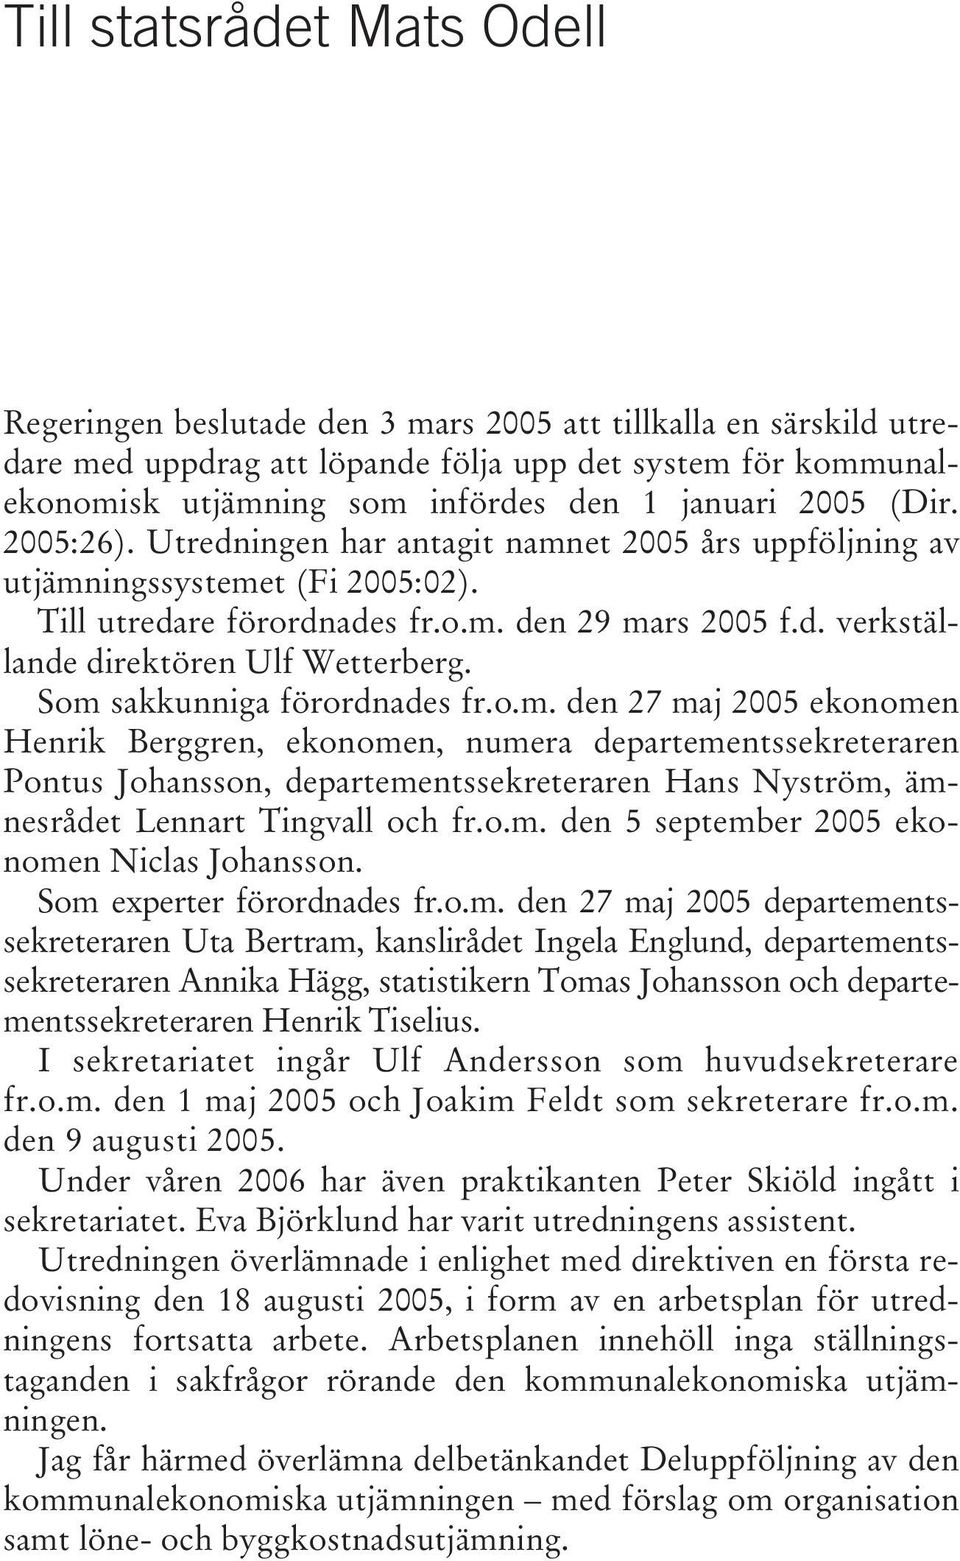 Som sakkunniga förordnades fr.o.m. den 27 maj 2005 ekonomen Henrik Berggren, ekonomen, numera departementssekreteraren Pontus Johansson, departementssekreteraren Hans Nyström, ämnesrådet Lennart Tingvall och fr.